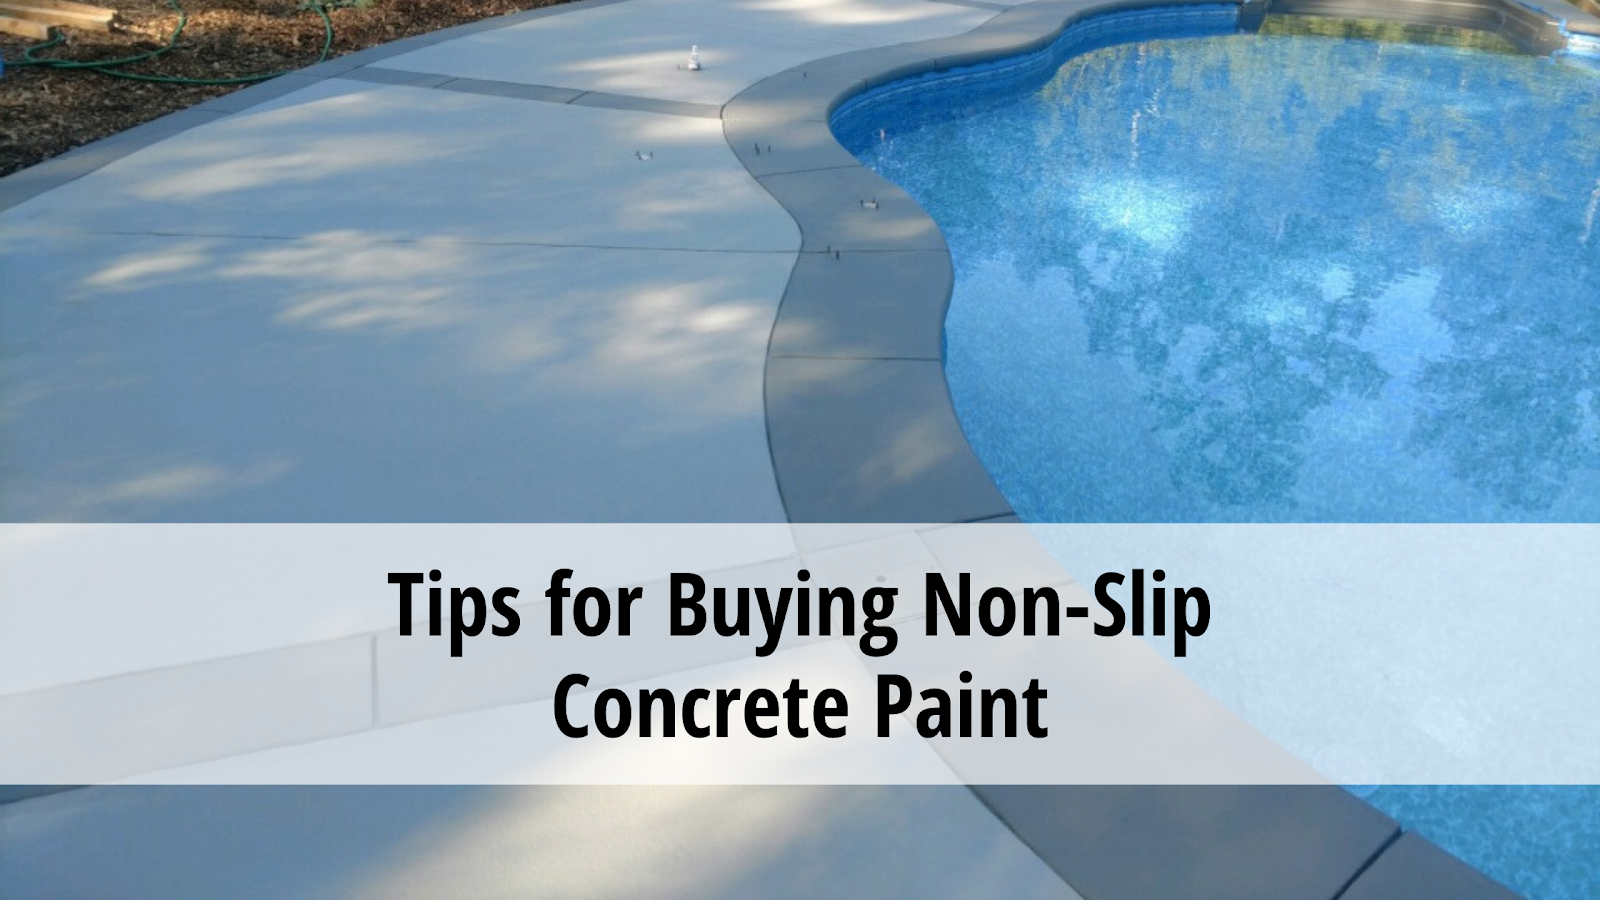 Concrete Paint, Non-Slip Concrete Paint